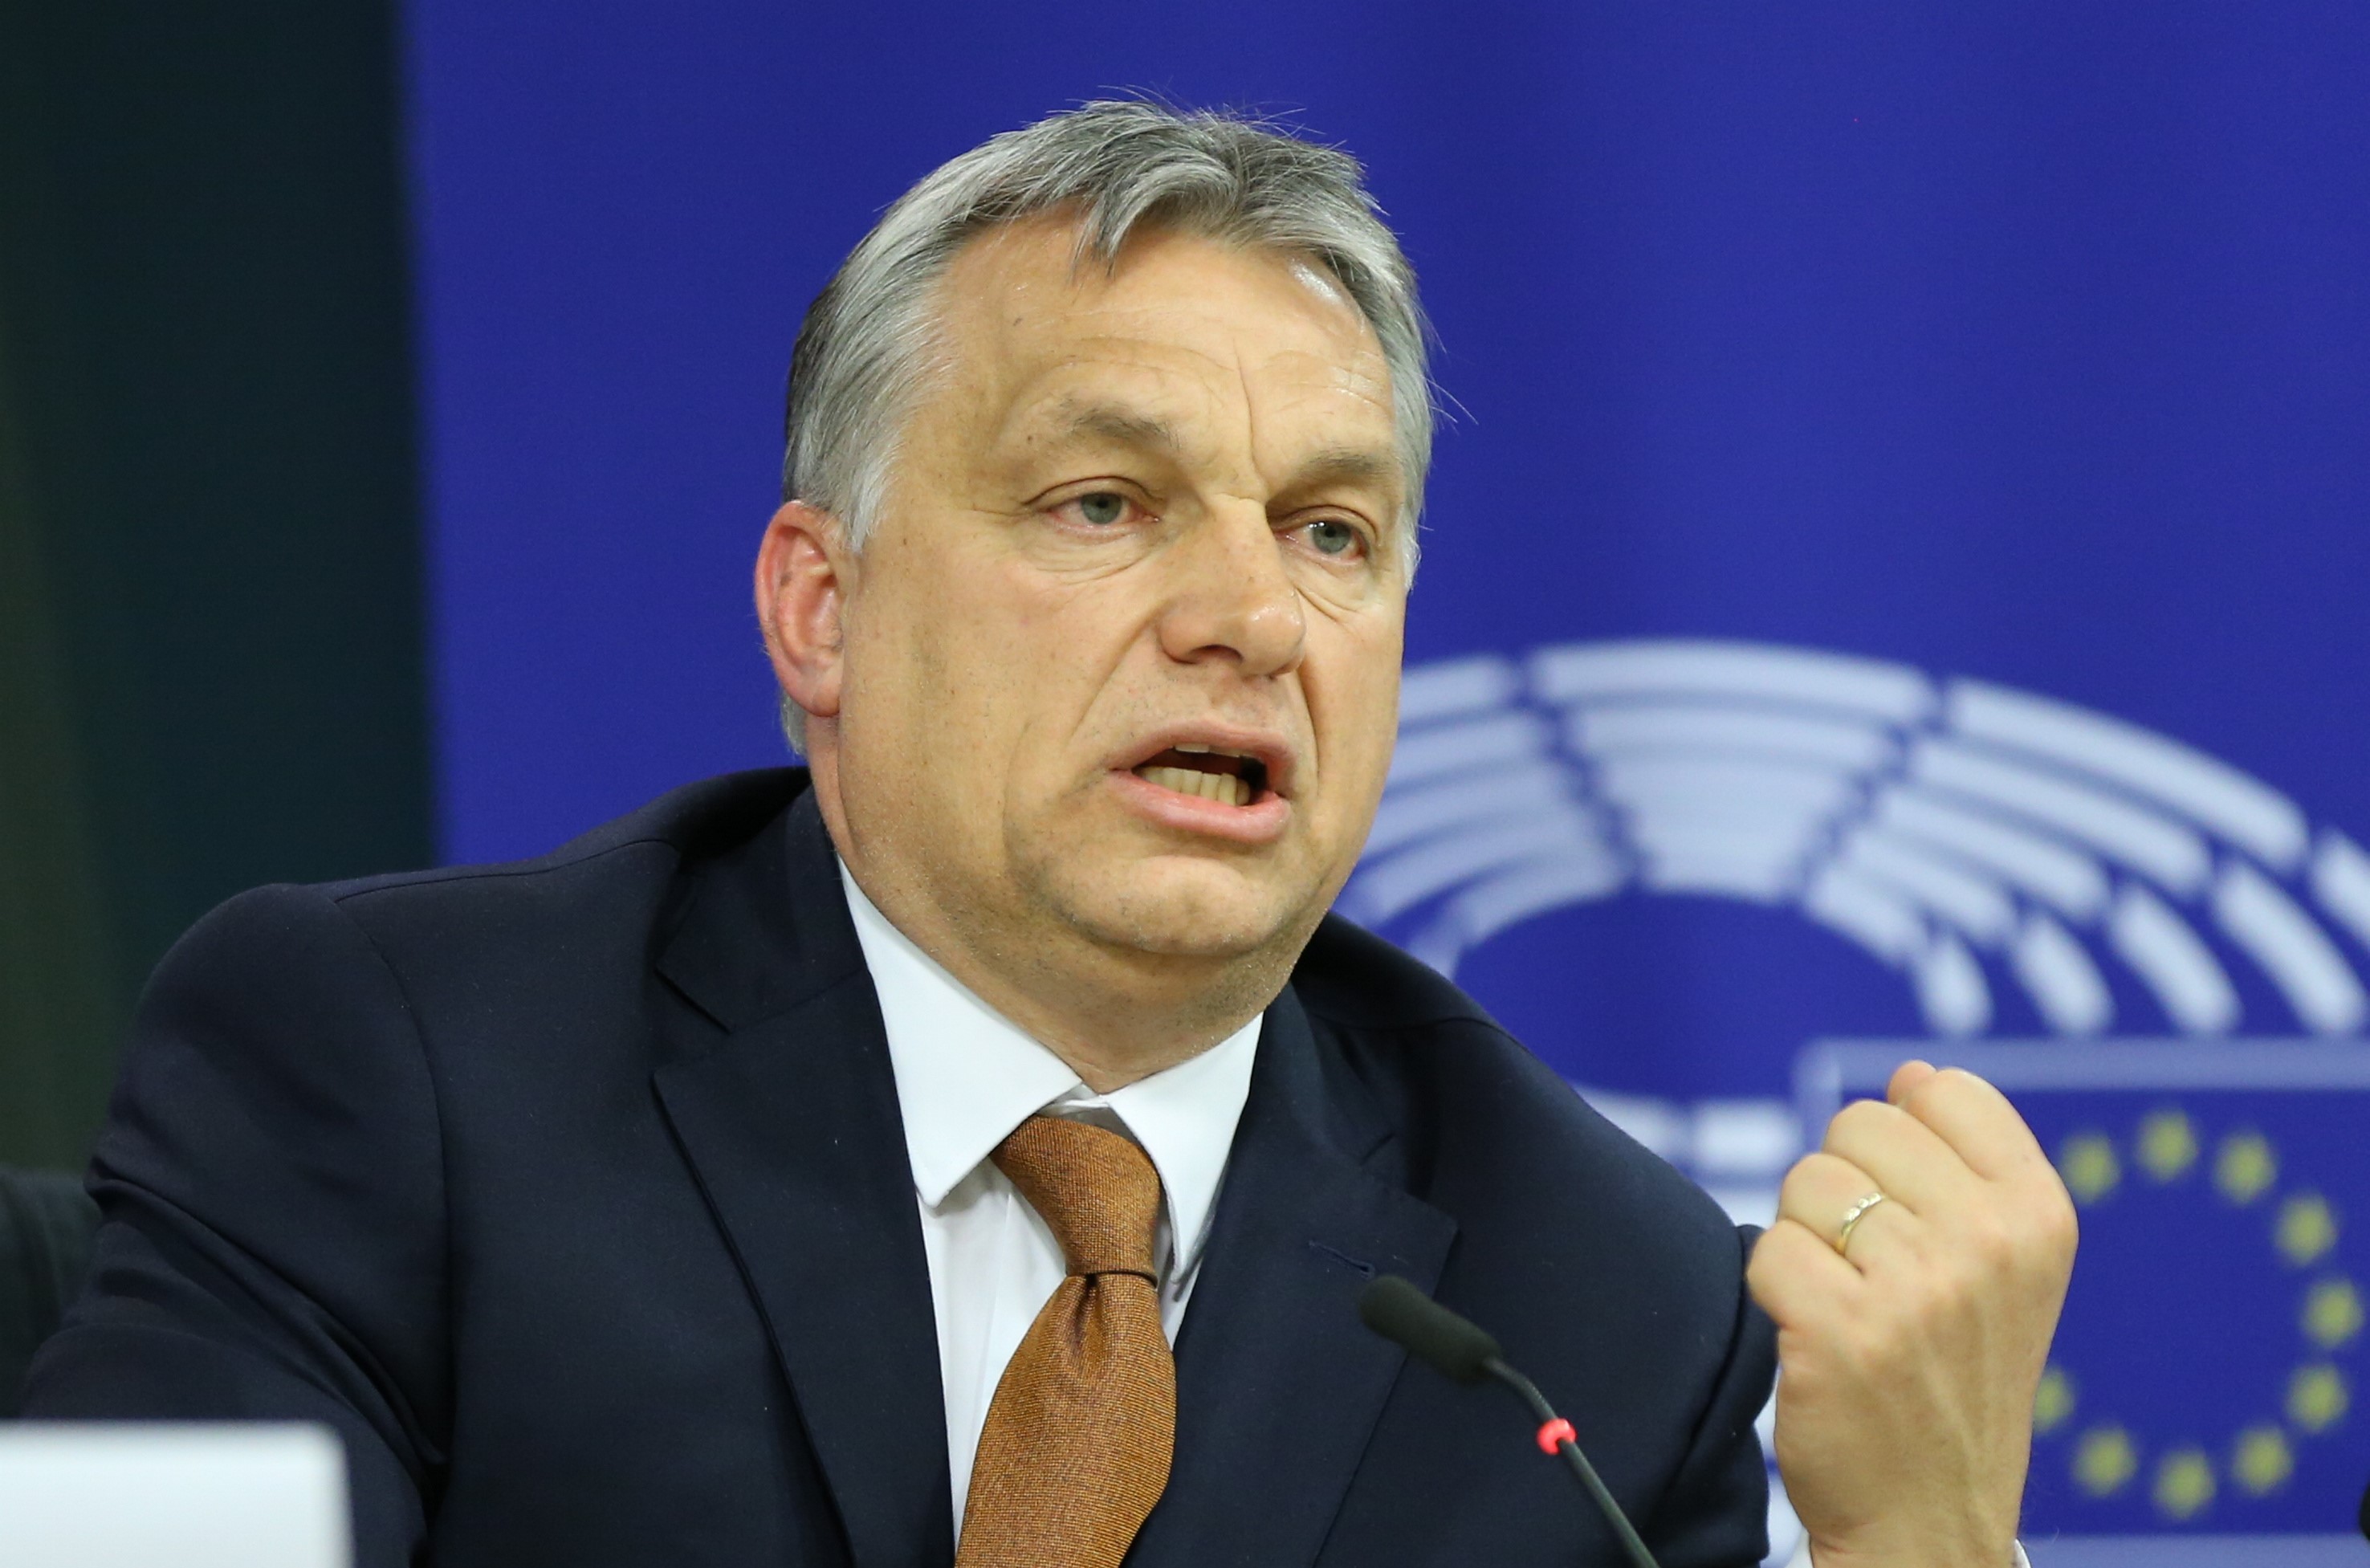 Tudják, miért akarja büntetni az EU Magyarországot? Mert dübörög a gazdaság!